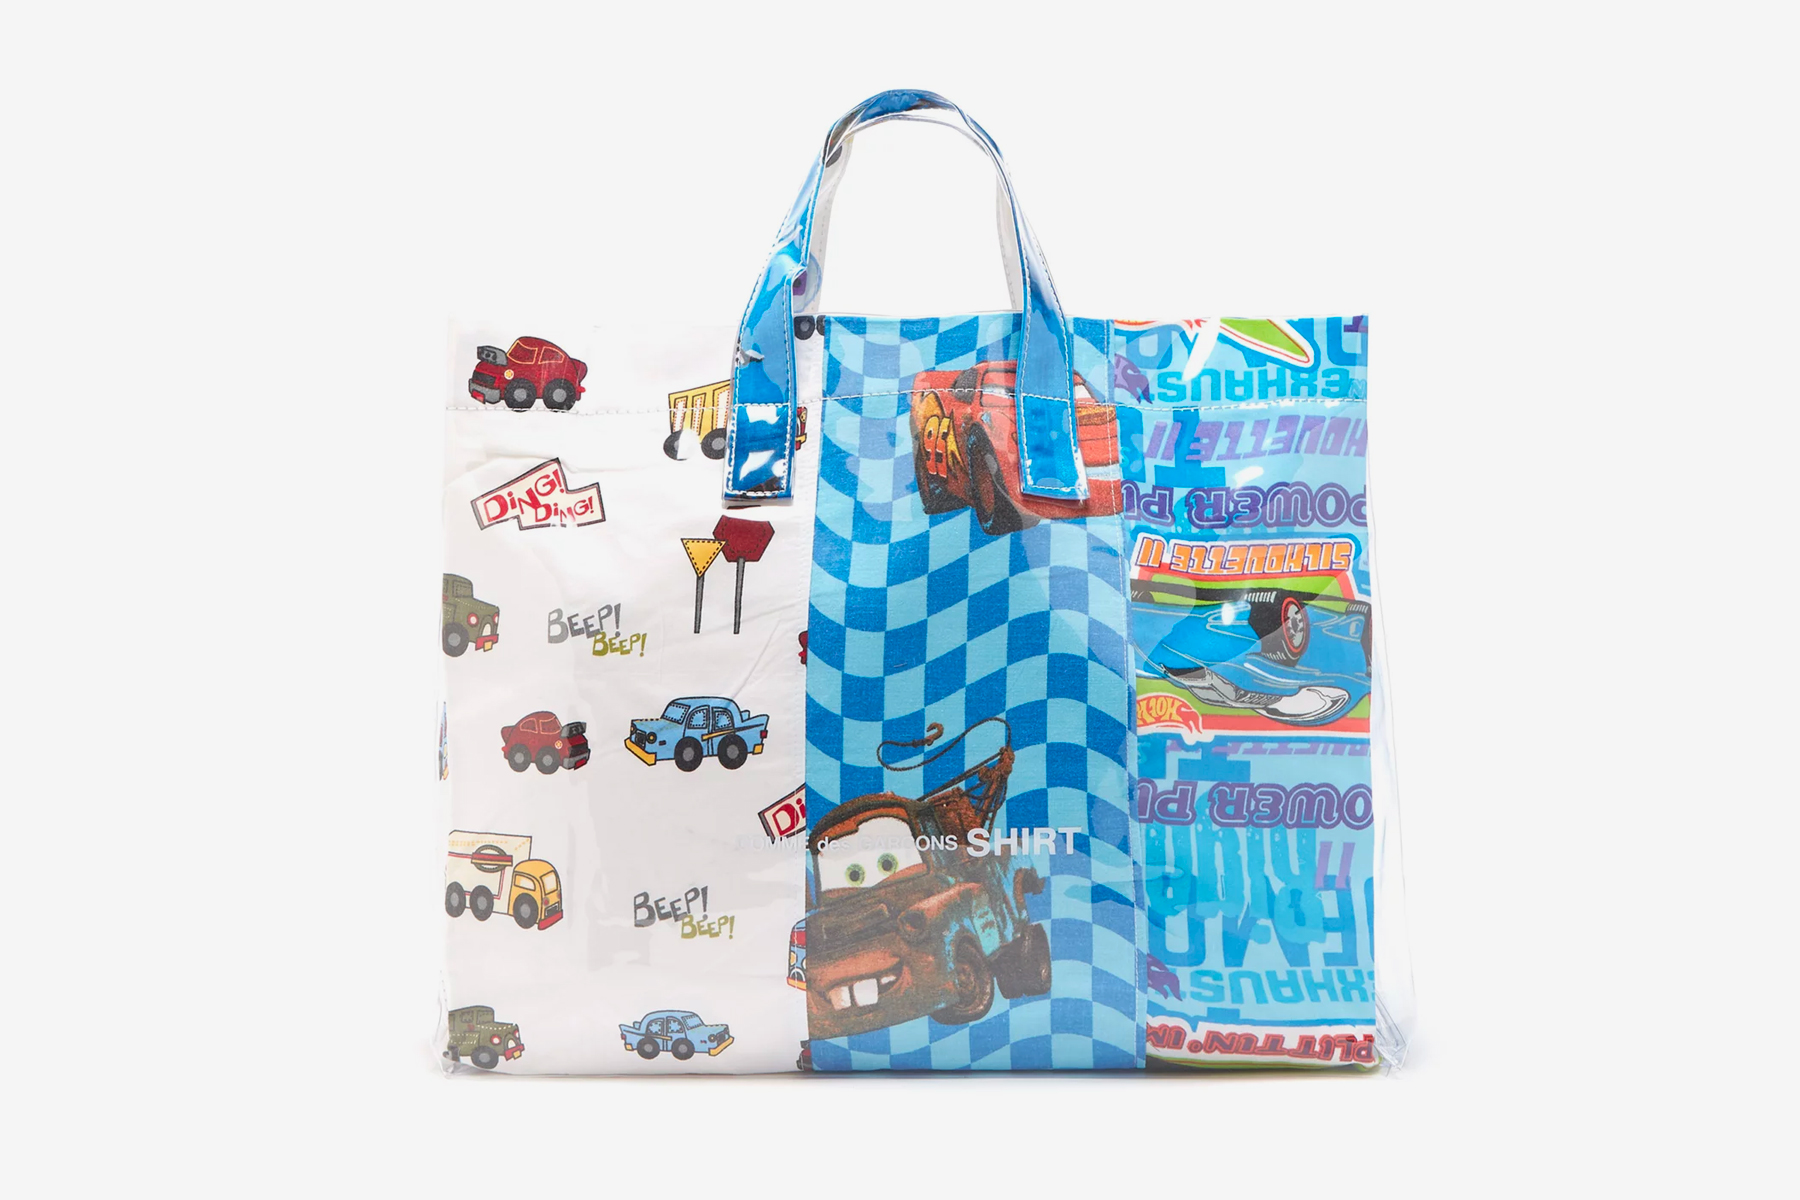 COMME des GARÇONS SHIRT Automobile Bedsheets Tote Bag cars pvc pixar disney bags accessories